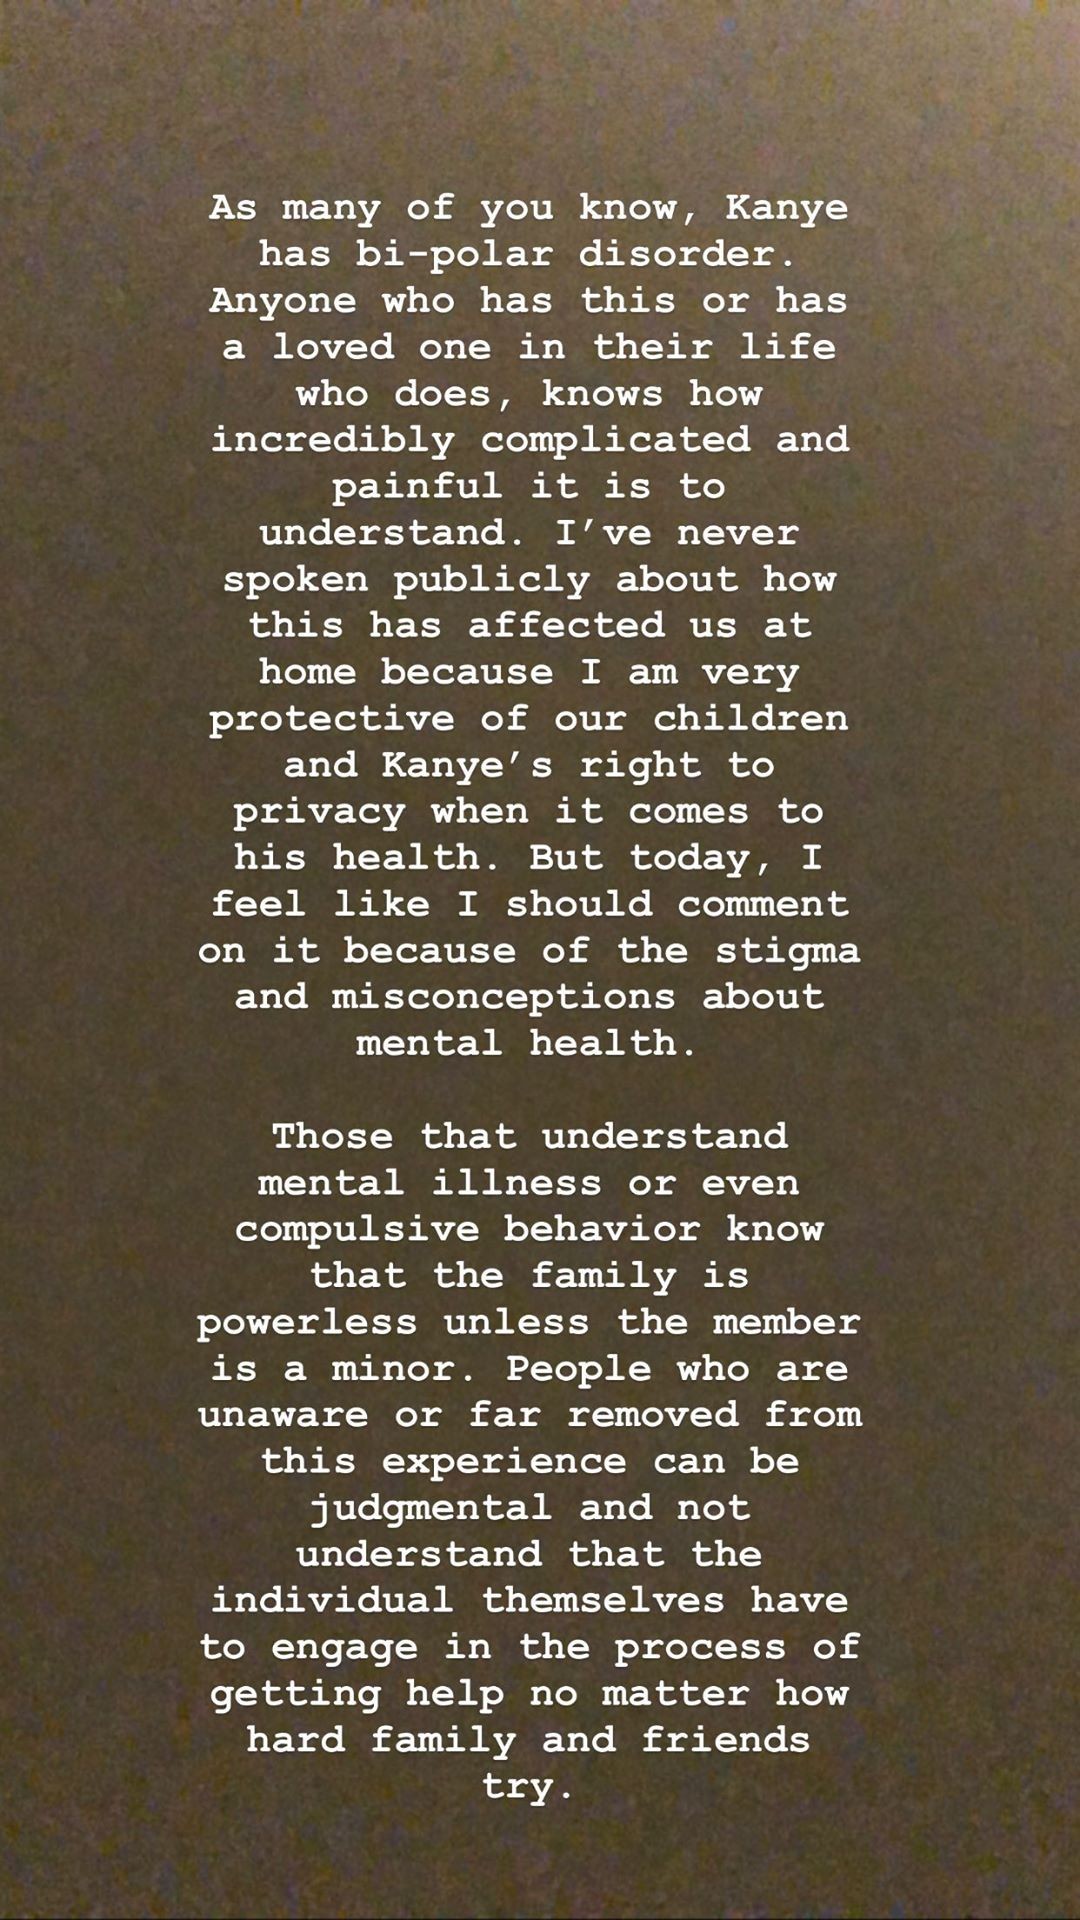 Publicação de Kim Kardashian sobre Kanye West  (Foto: Reprodução/Instagram)